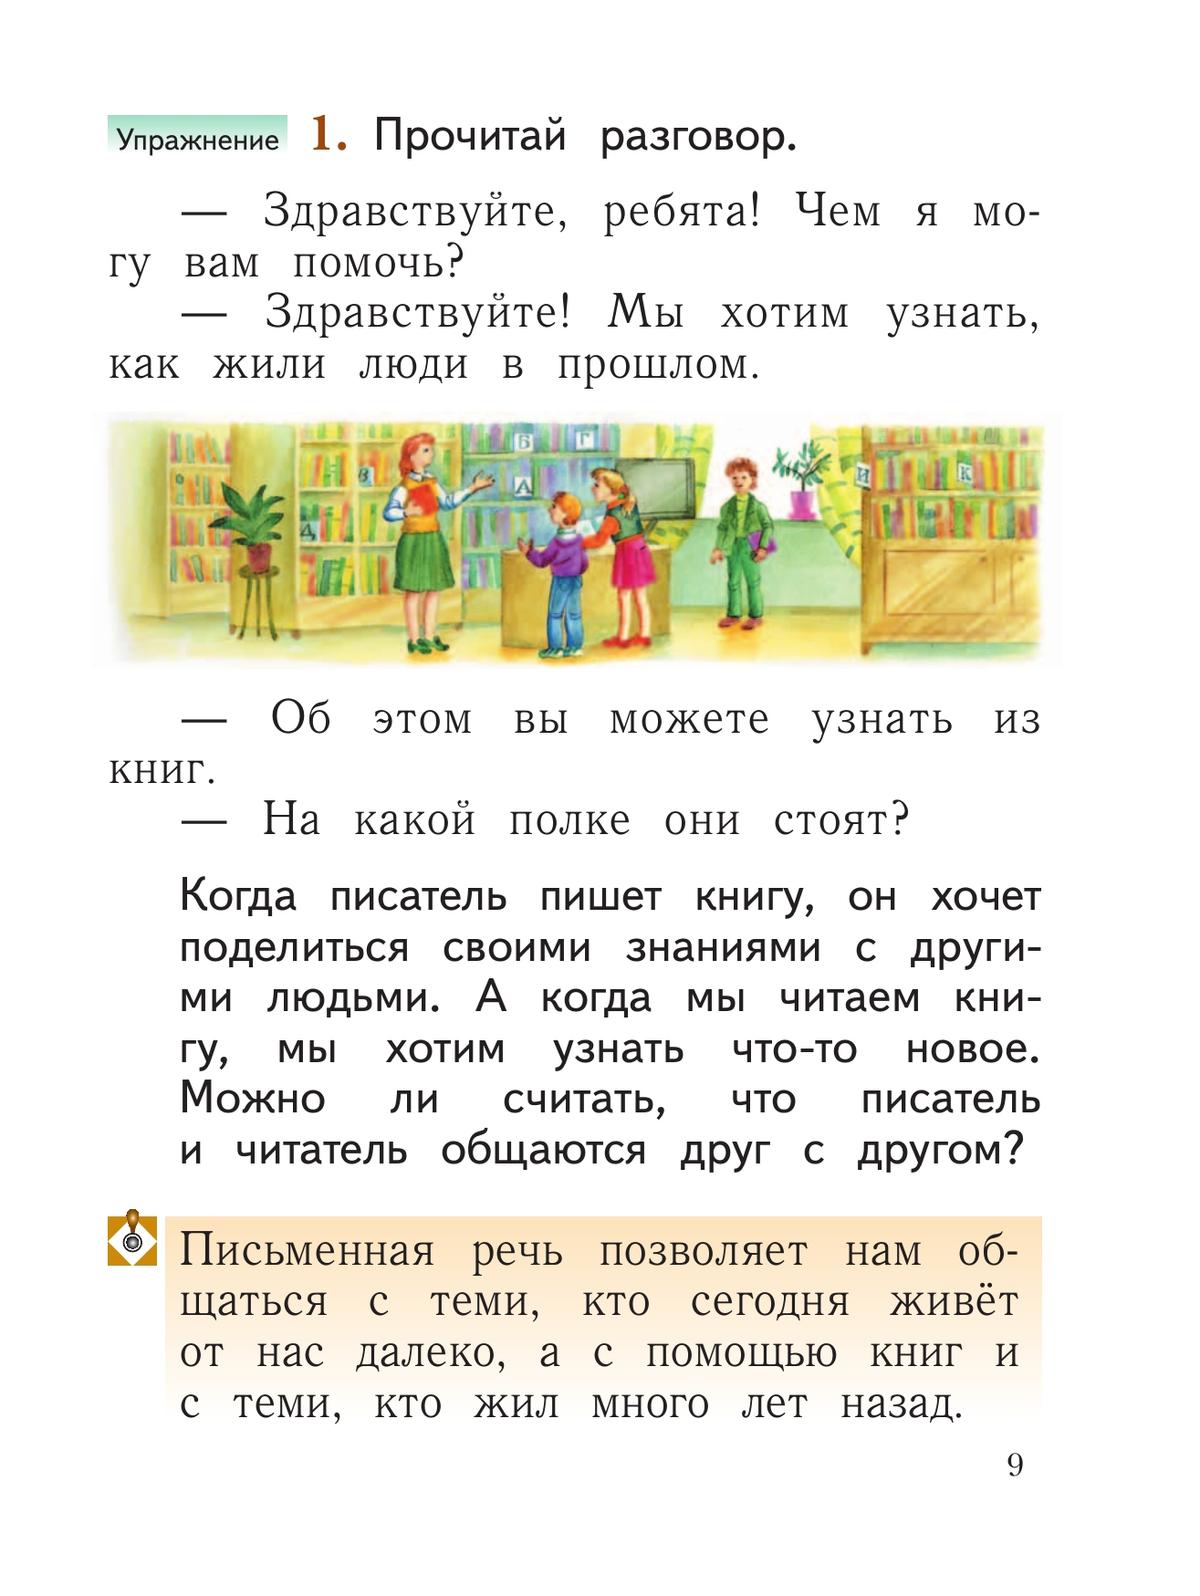 Русский язык. 1 класс. Учебное пособие 6